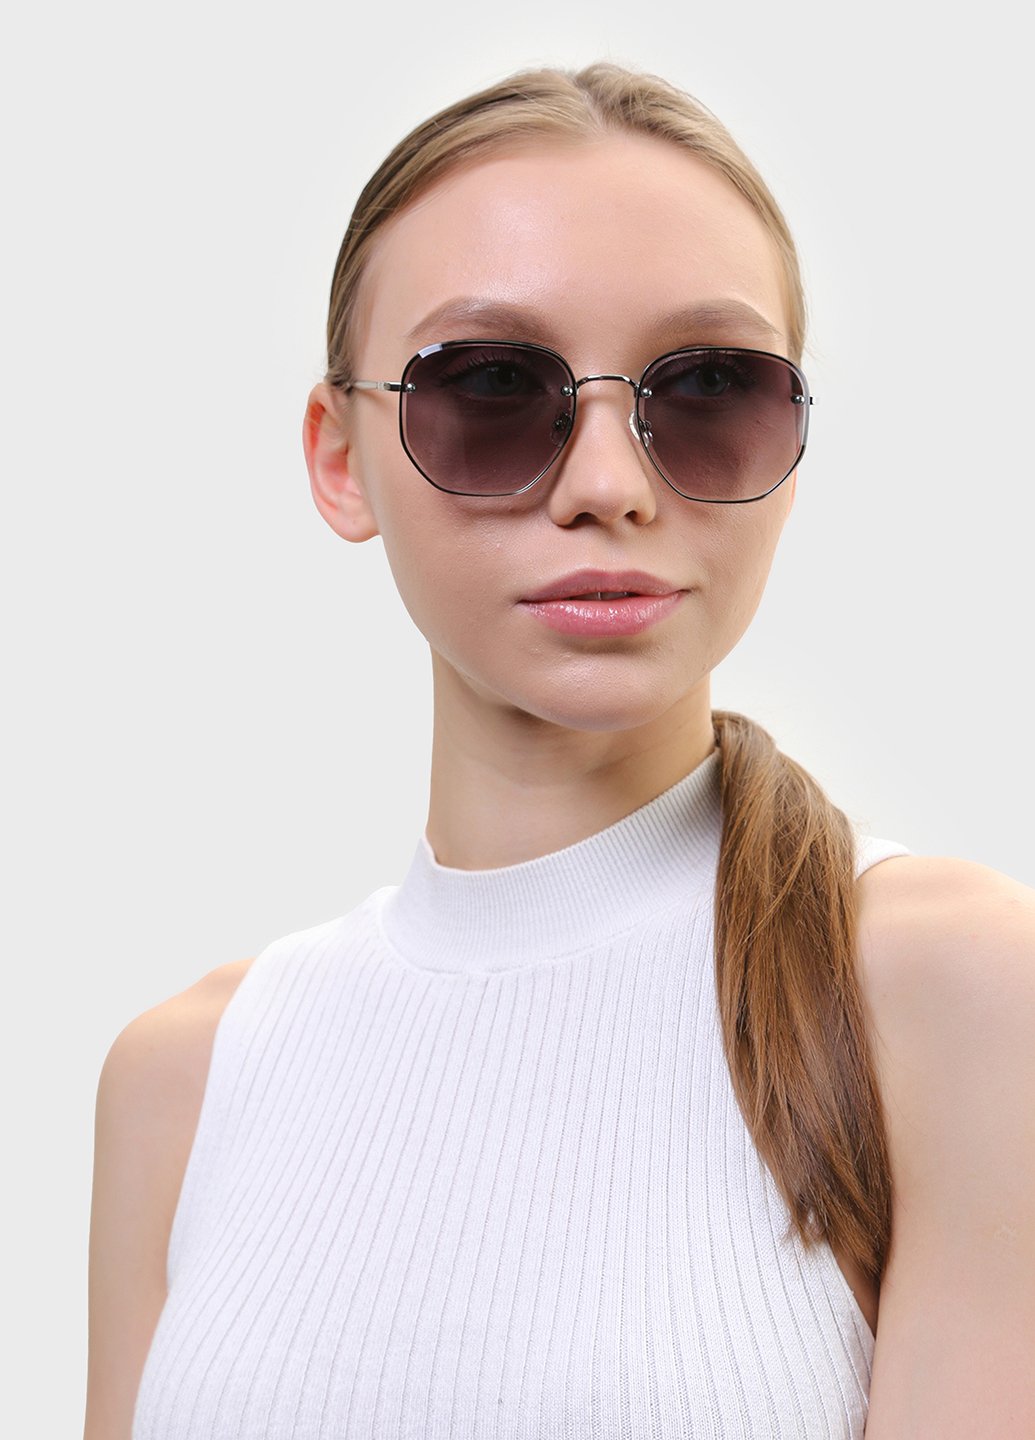 Купить Женские солнцезащитные очки Merlini с поляризацией S31448 117152 - Серый в интернет-магазине